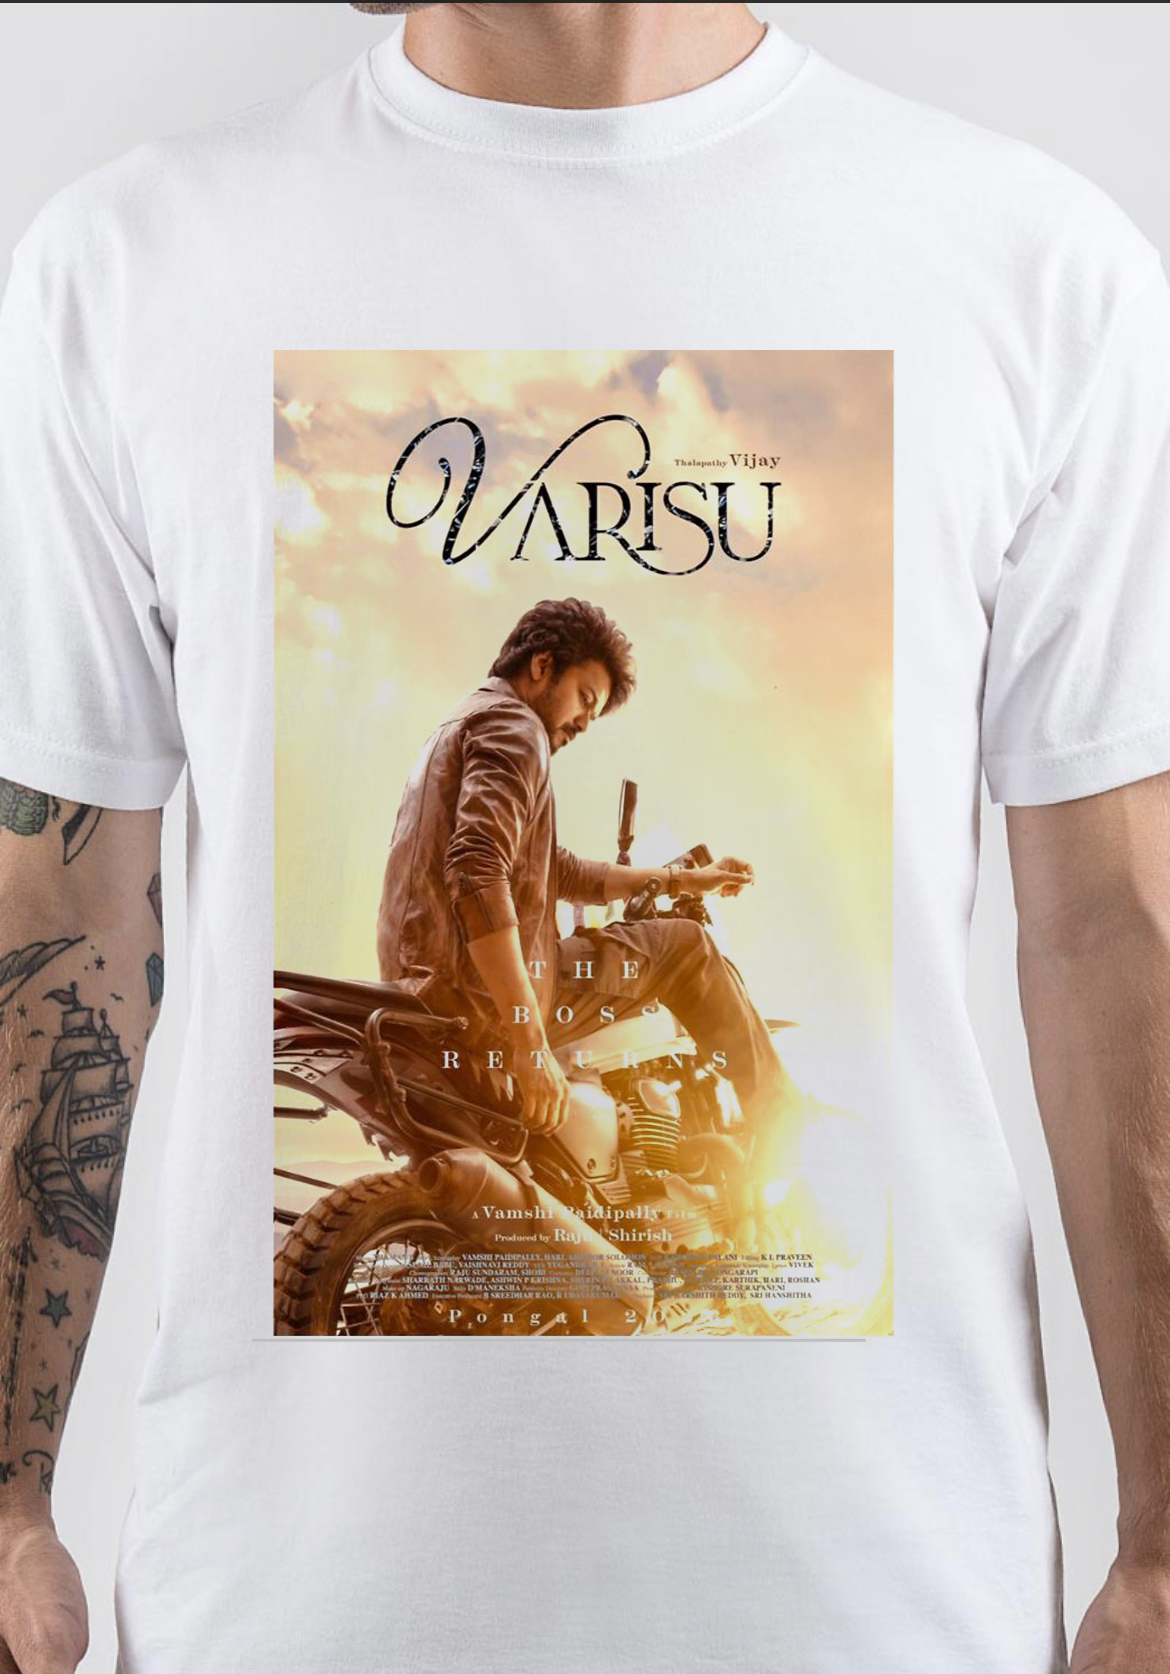 Varisu T-Shirt And Merchandise